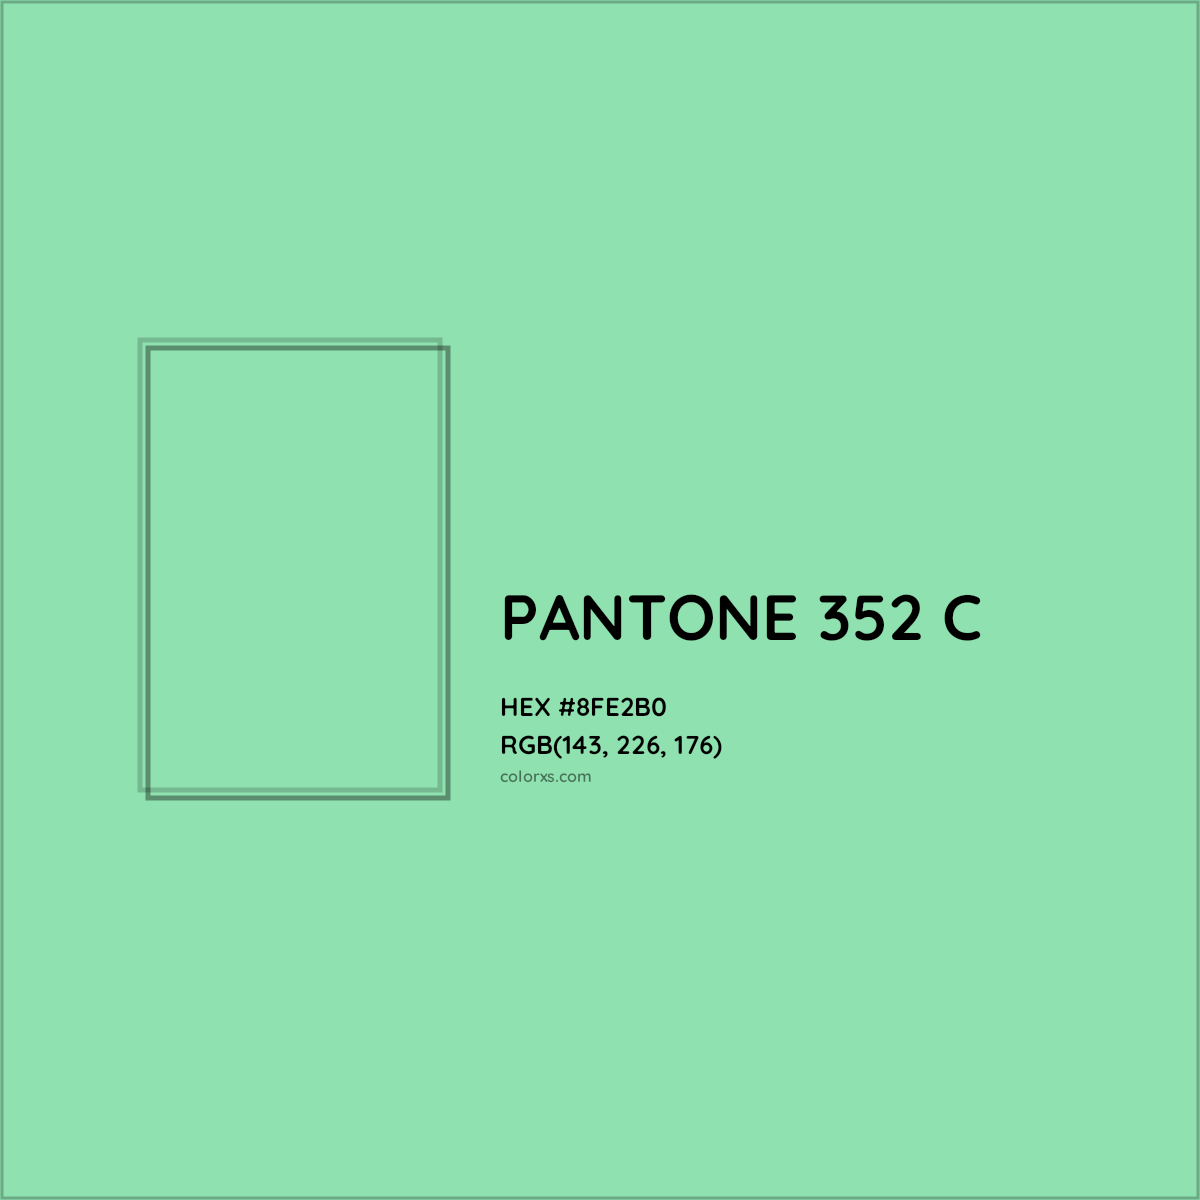 HEX #8FE2B0 PANTONE 352 C CMS Pantone PMS - Color Code